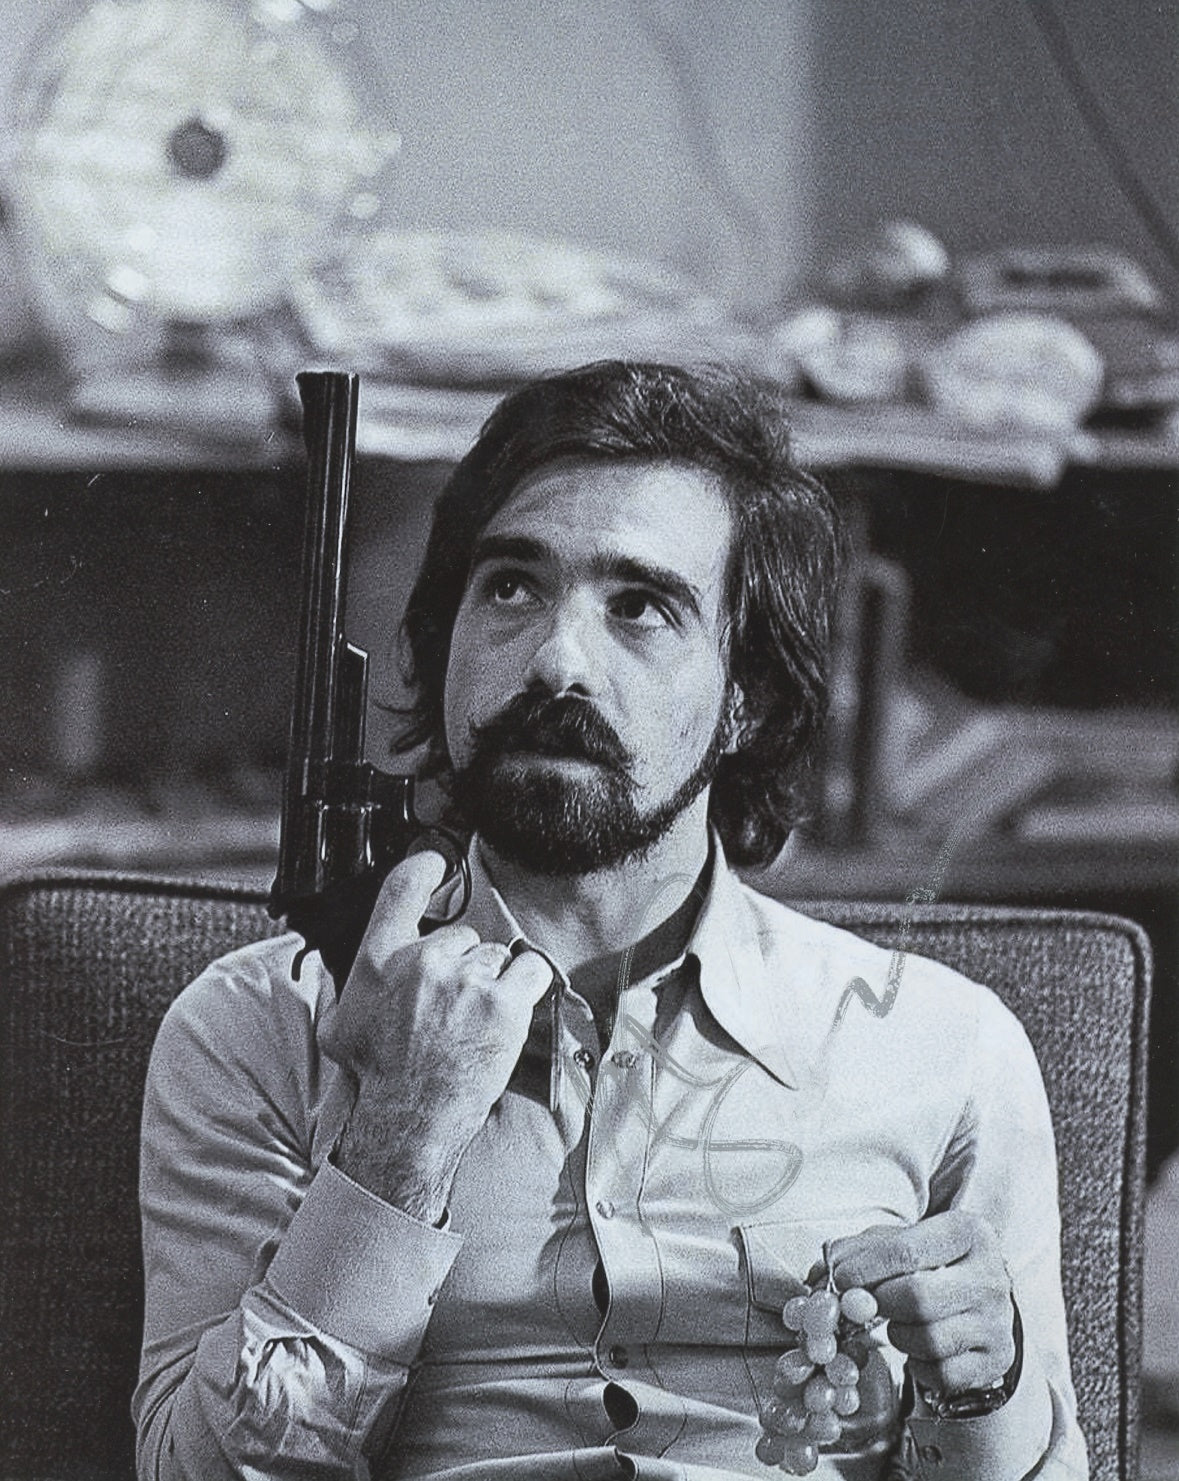 Martin Scorsese Signed 8x10 Photo